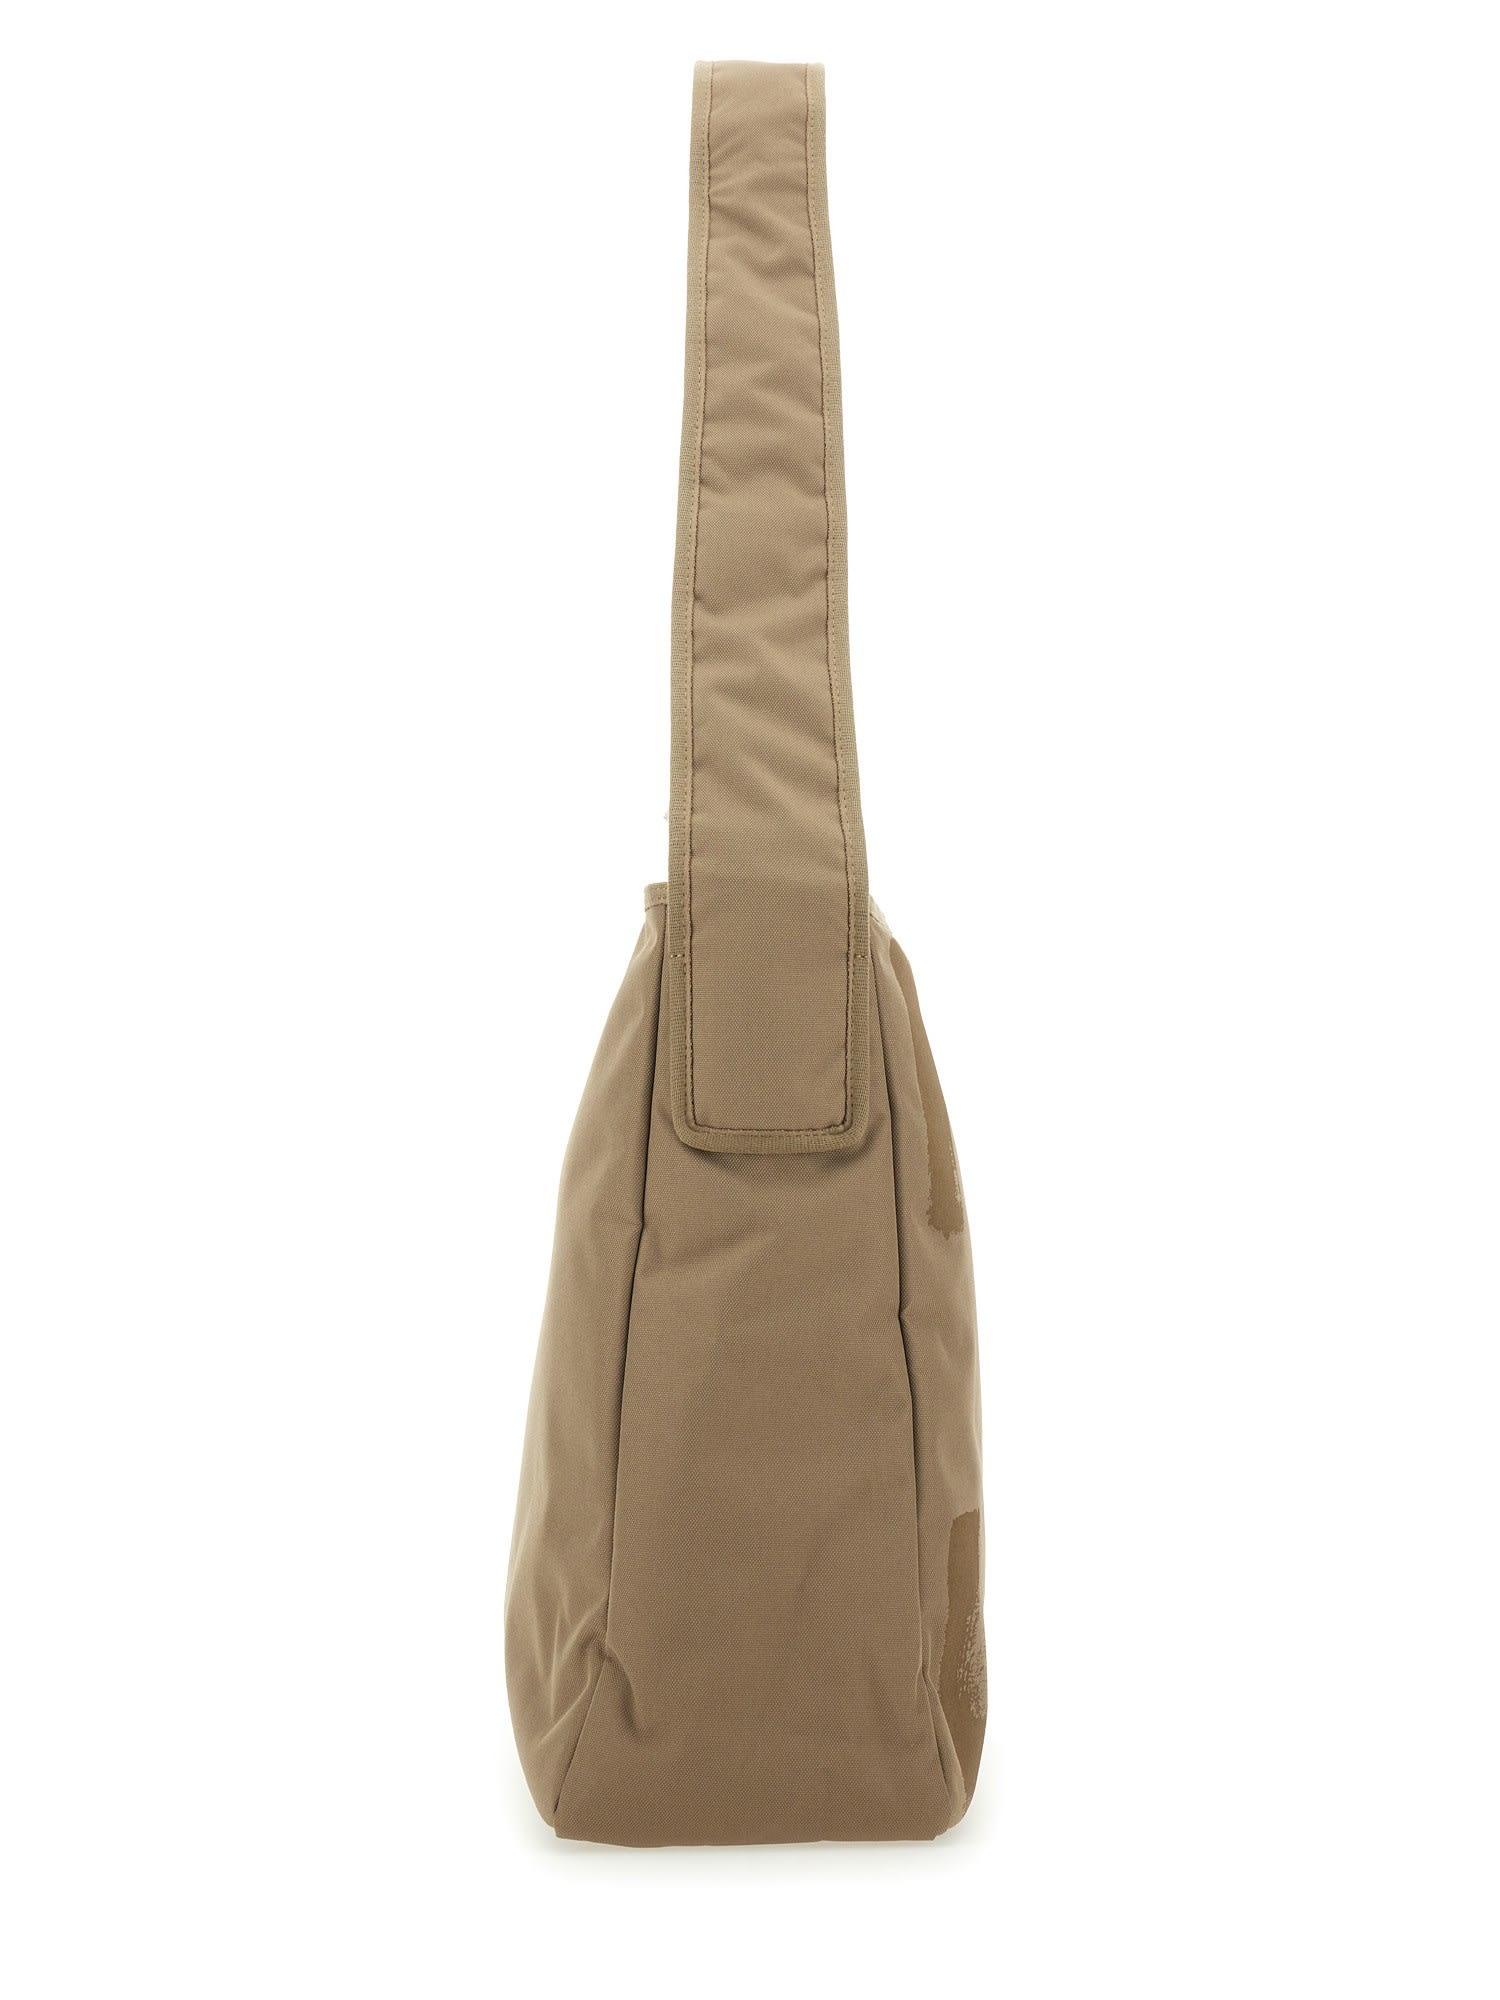 Off-White c/o Virgil Abloh Logo Detail Tote Bag in Natural for Men